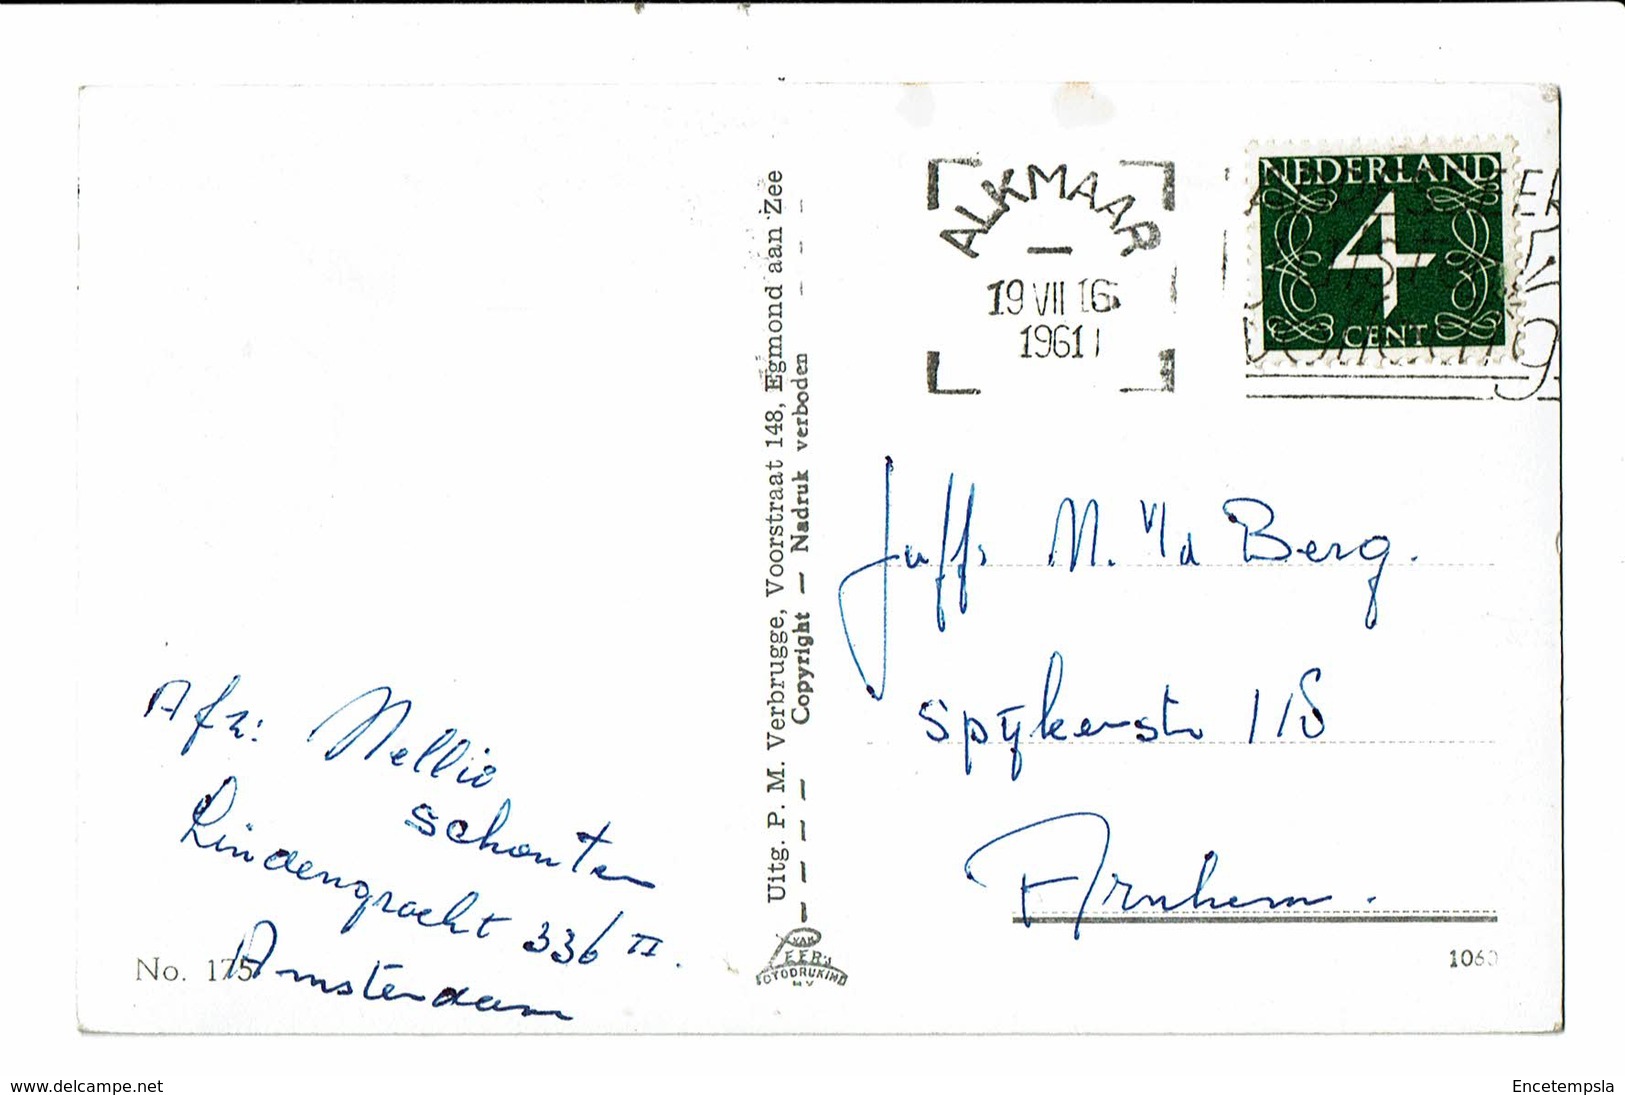 CPA - Carte Postale-Pays Bas - Egmond Aan Zee- Strandgezicht -1961 VM3122 - Egmond Aan Zee